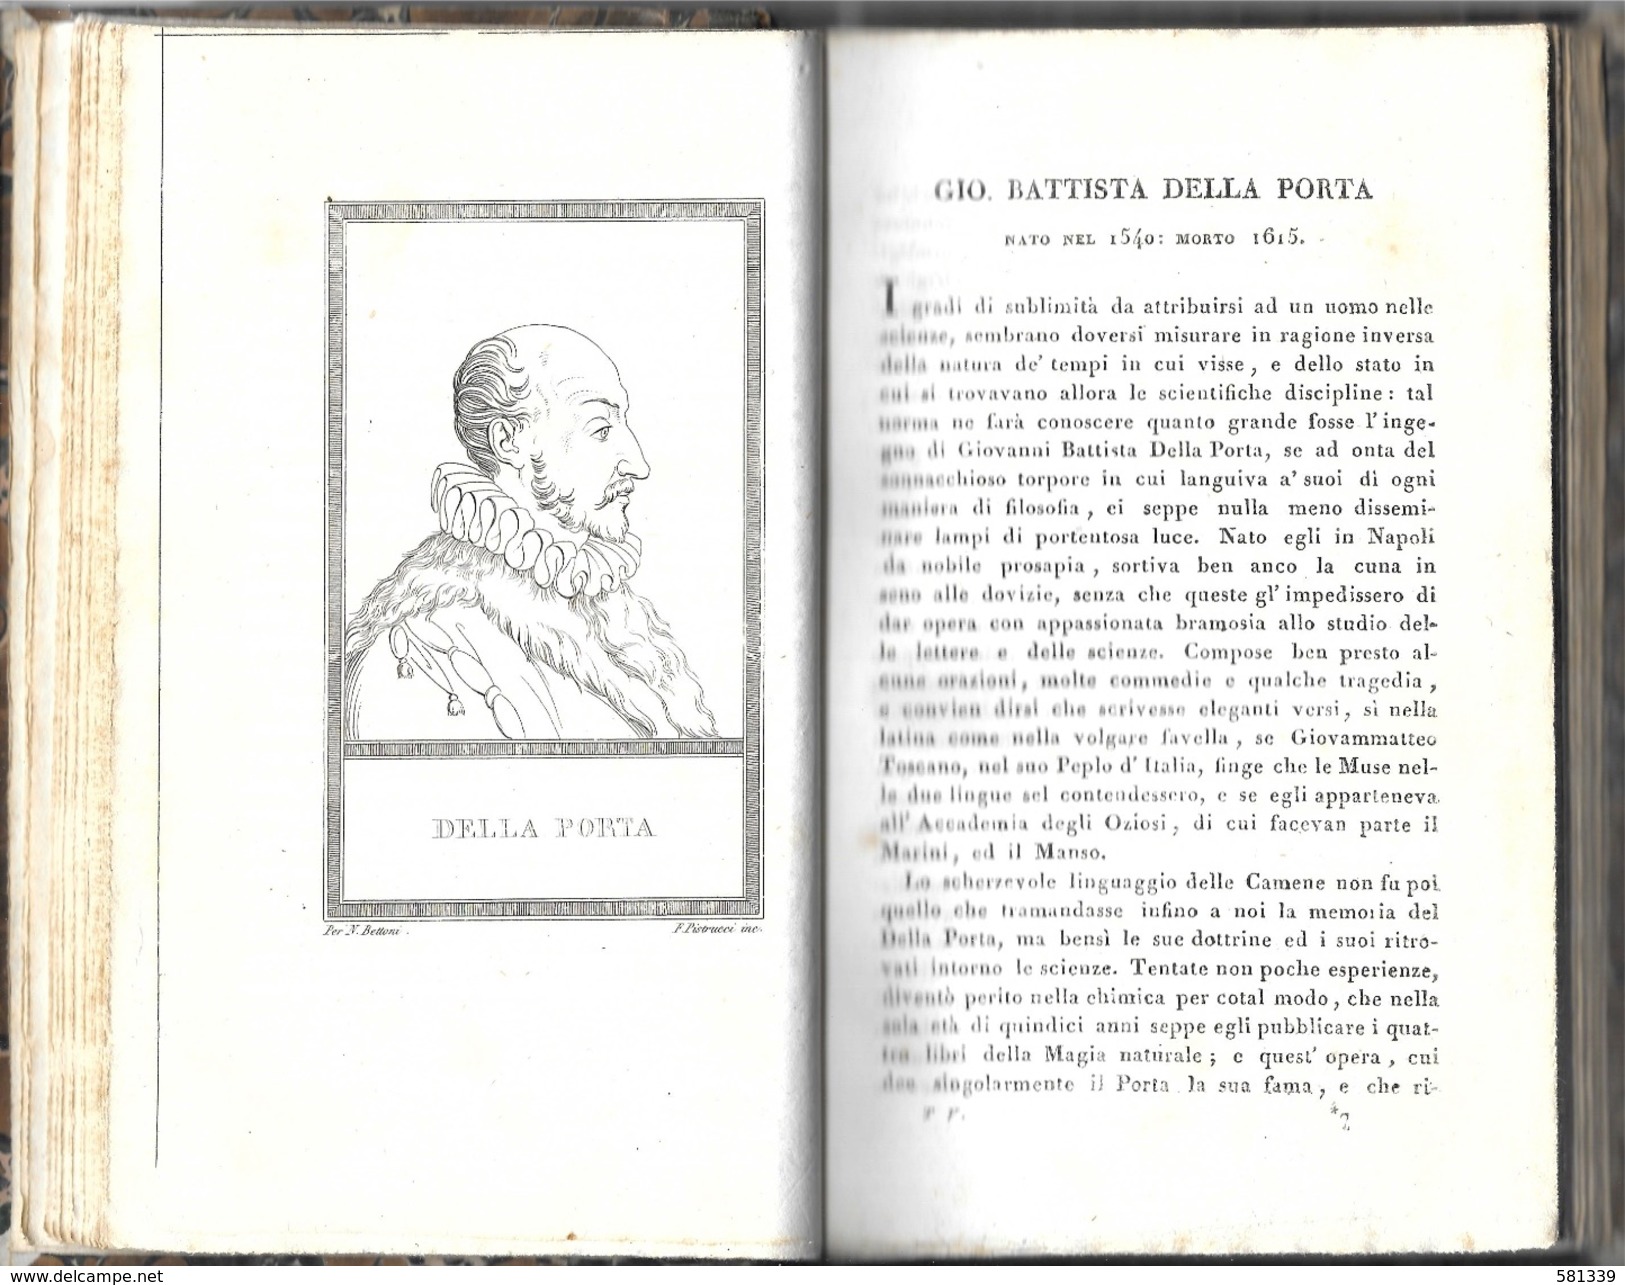 " VITE E RITRATTI Di UOMINI CELEBRI " Nicolò Bettoni 1821 , Con 40 Incisioni , Vol.5-6 - Bibliography